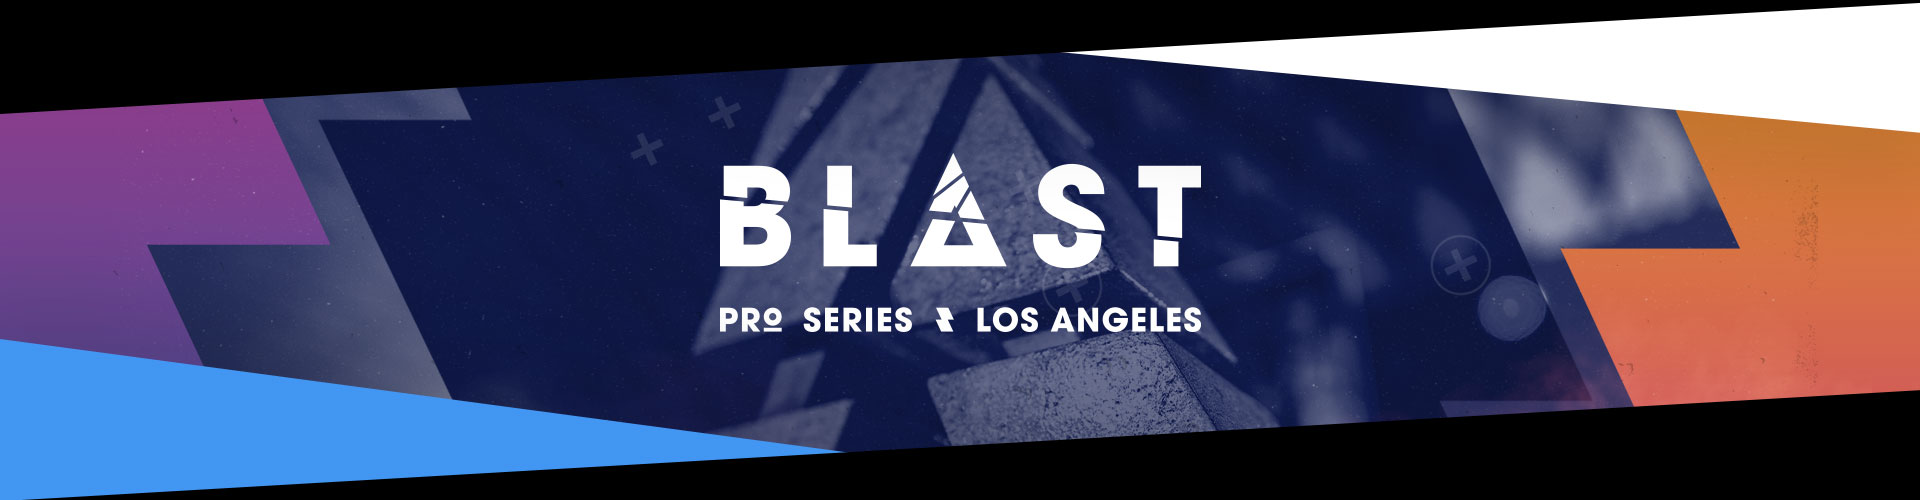 Los Angeles stod för värdskapet när BLAST Pro Series avgjordes